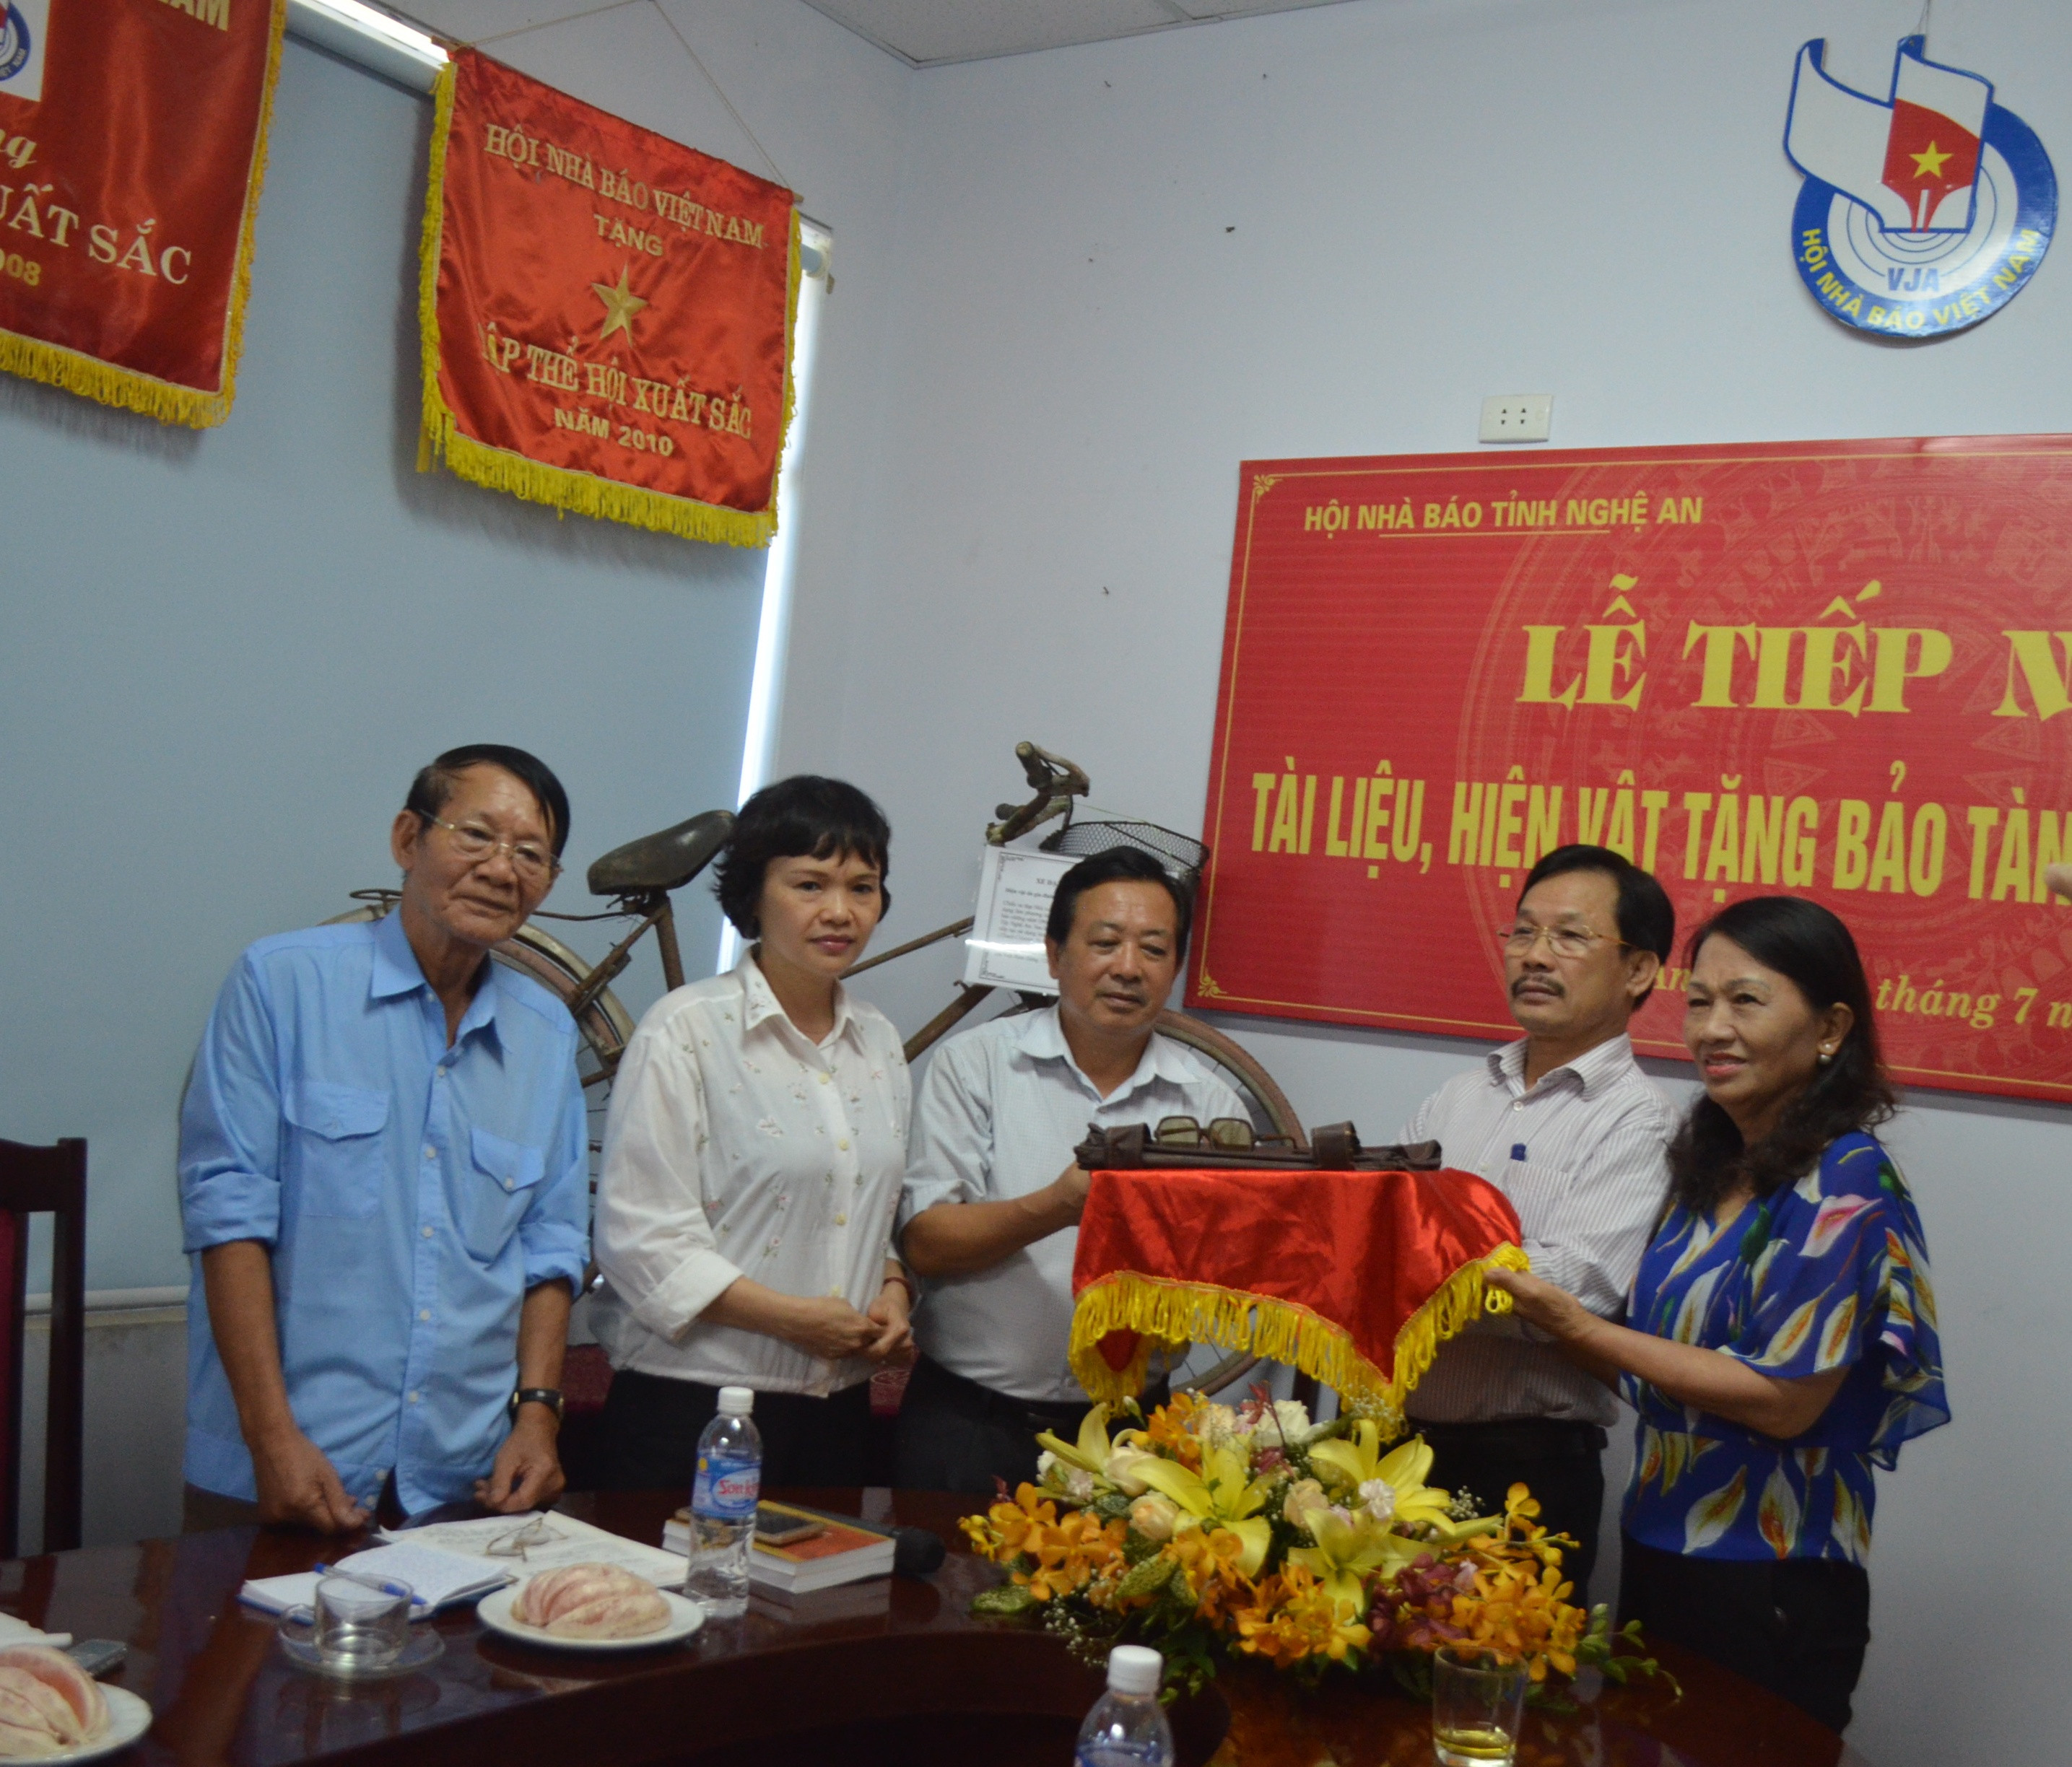 Đại diện gia đình Nhà báo, Liệt sỹ Đặng Loan trao tặng hiện vật cho Bảo tàng Báo chí Cách mạng Việt Nam.Ành: Như Biển